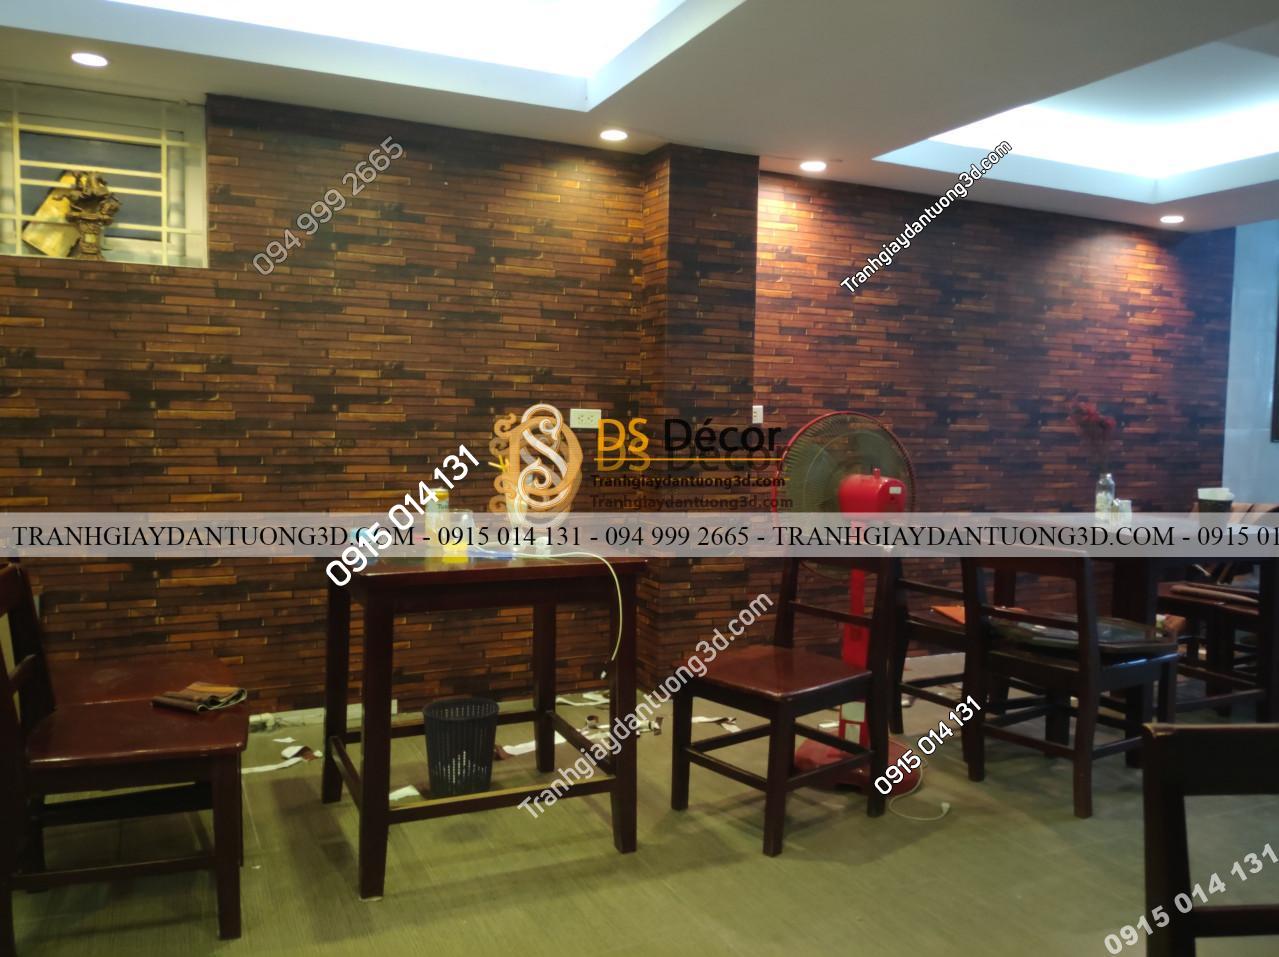 Thi công giấy dán tường giả gỗ nâu cho nhà hàng tại Hà Nội